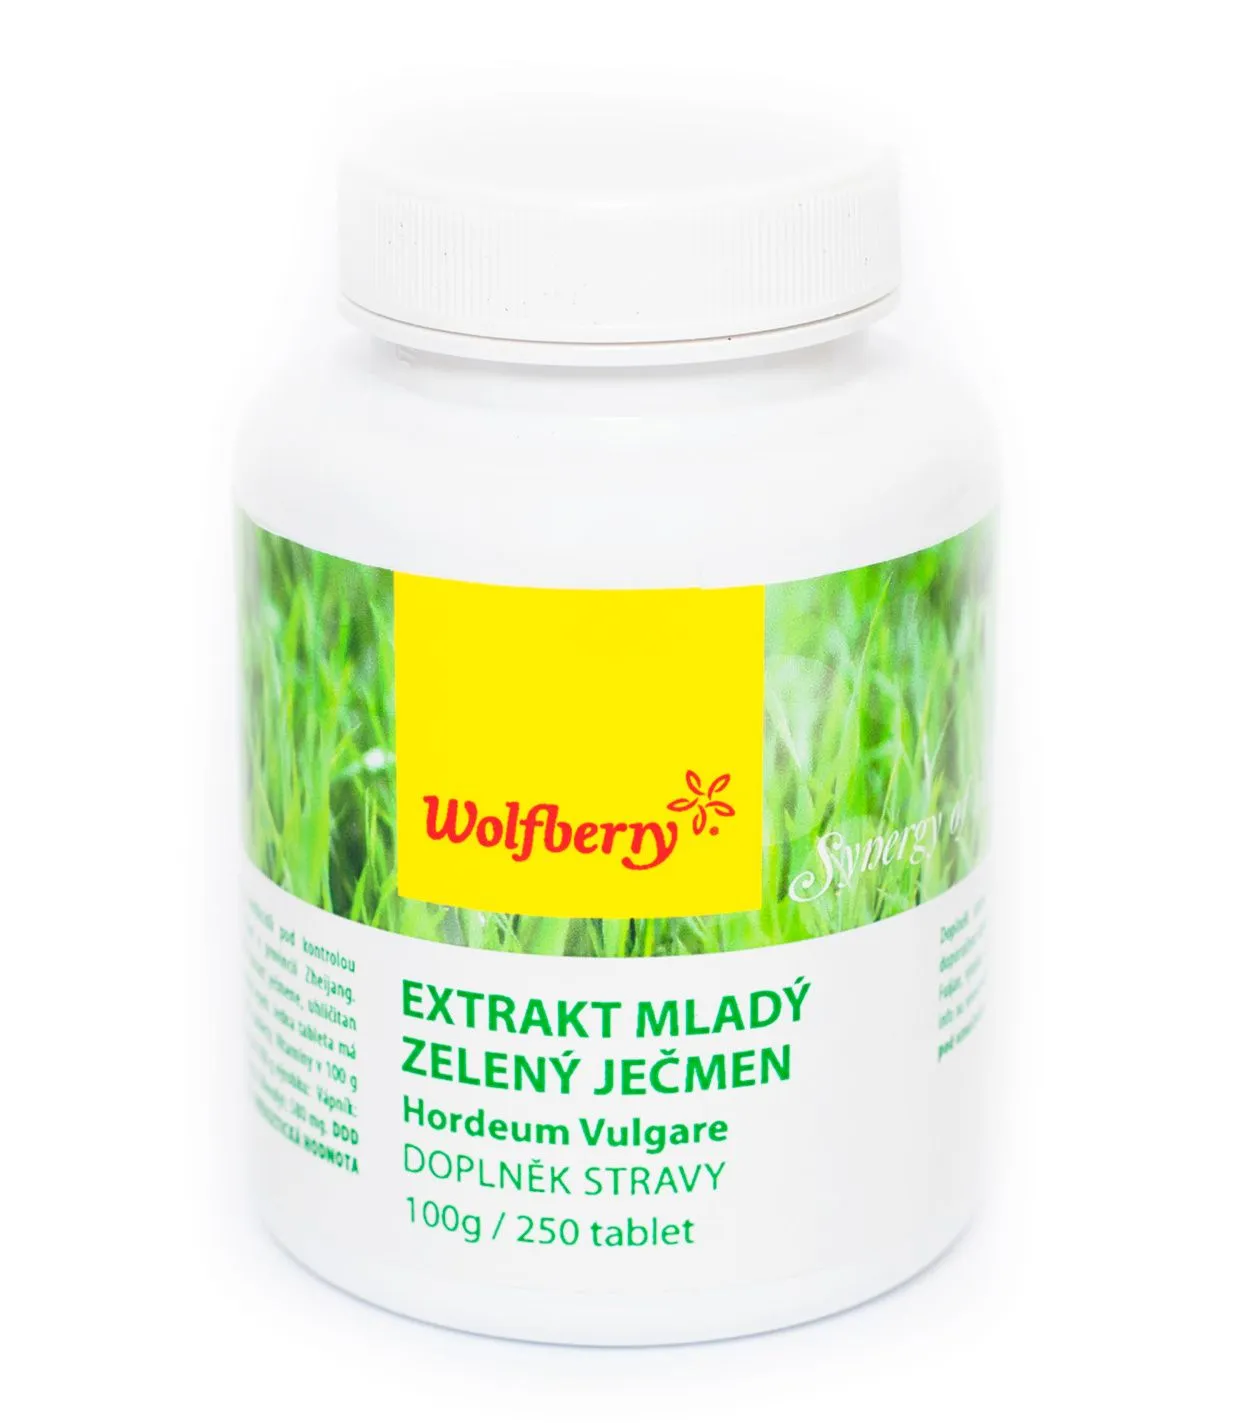 Wolfberry Extrakt mladý zelený ječmen tbl.250